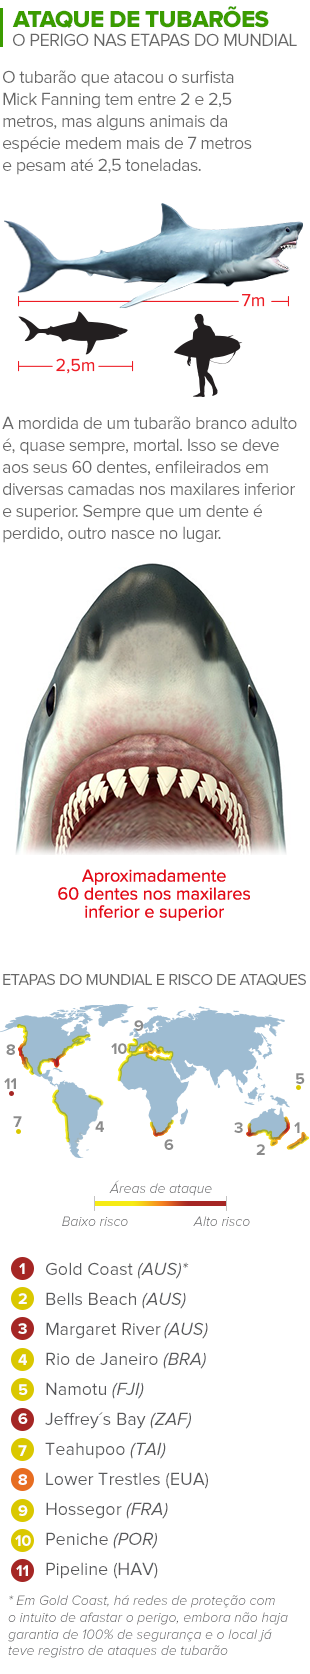 info ataque tubarão 3 (Foto: arte esporte)